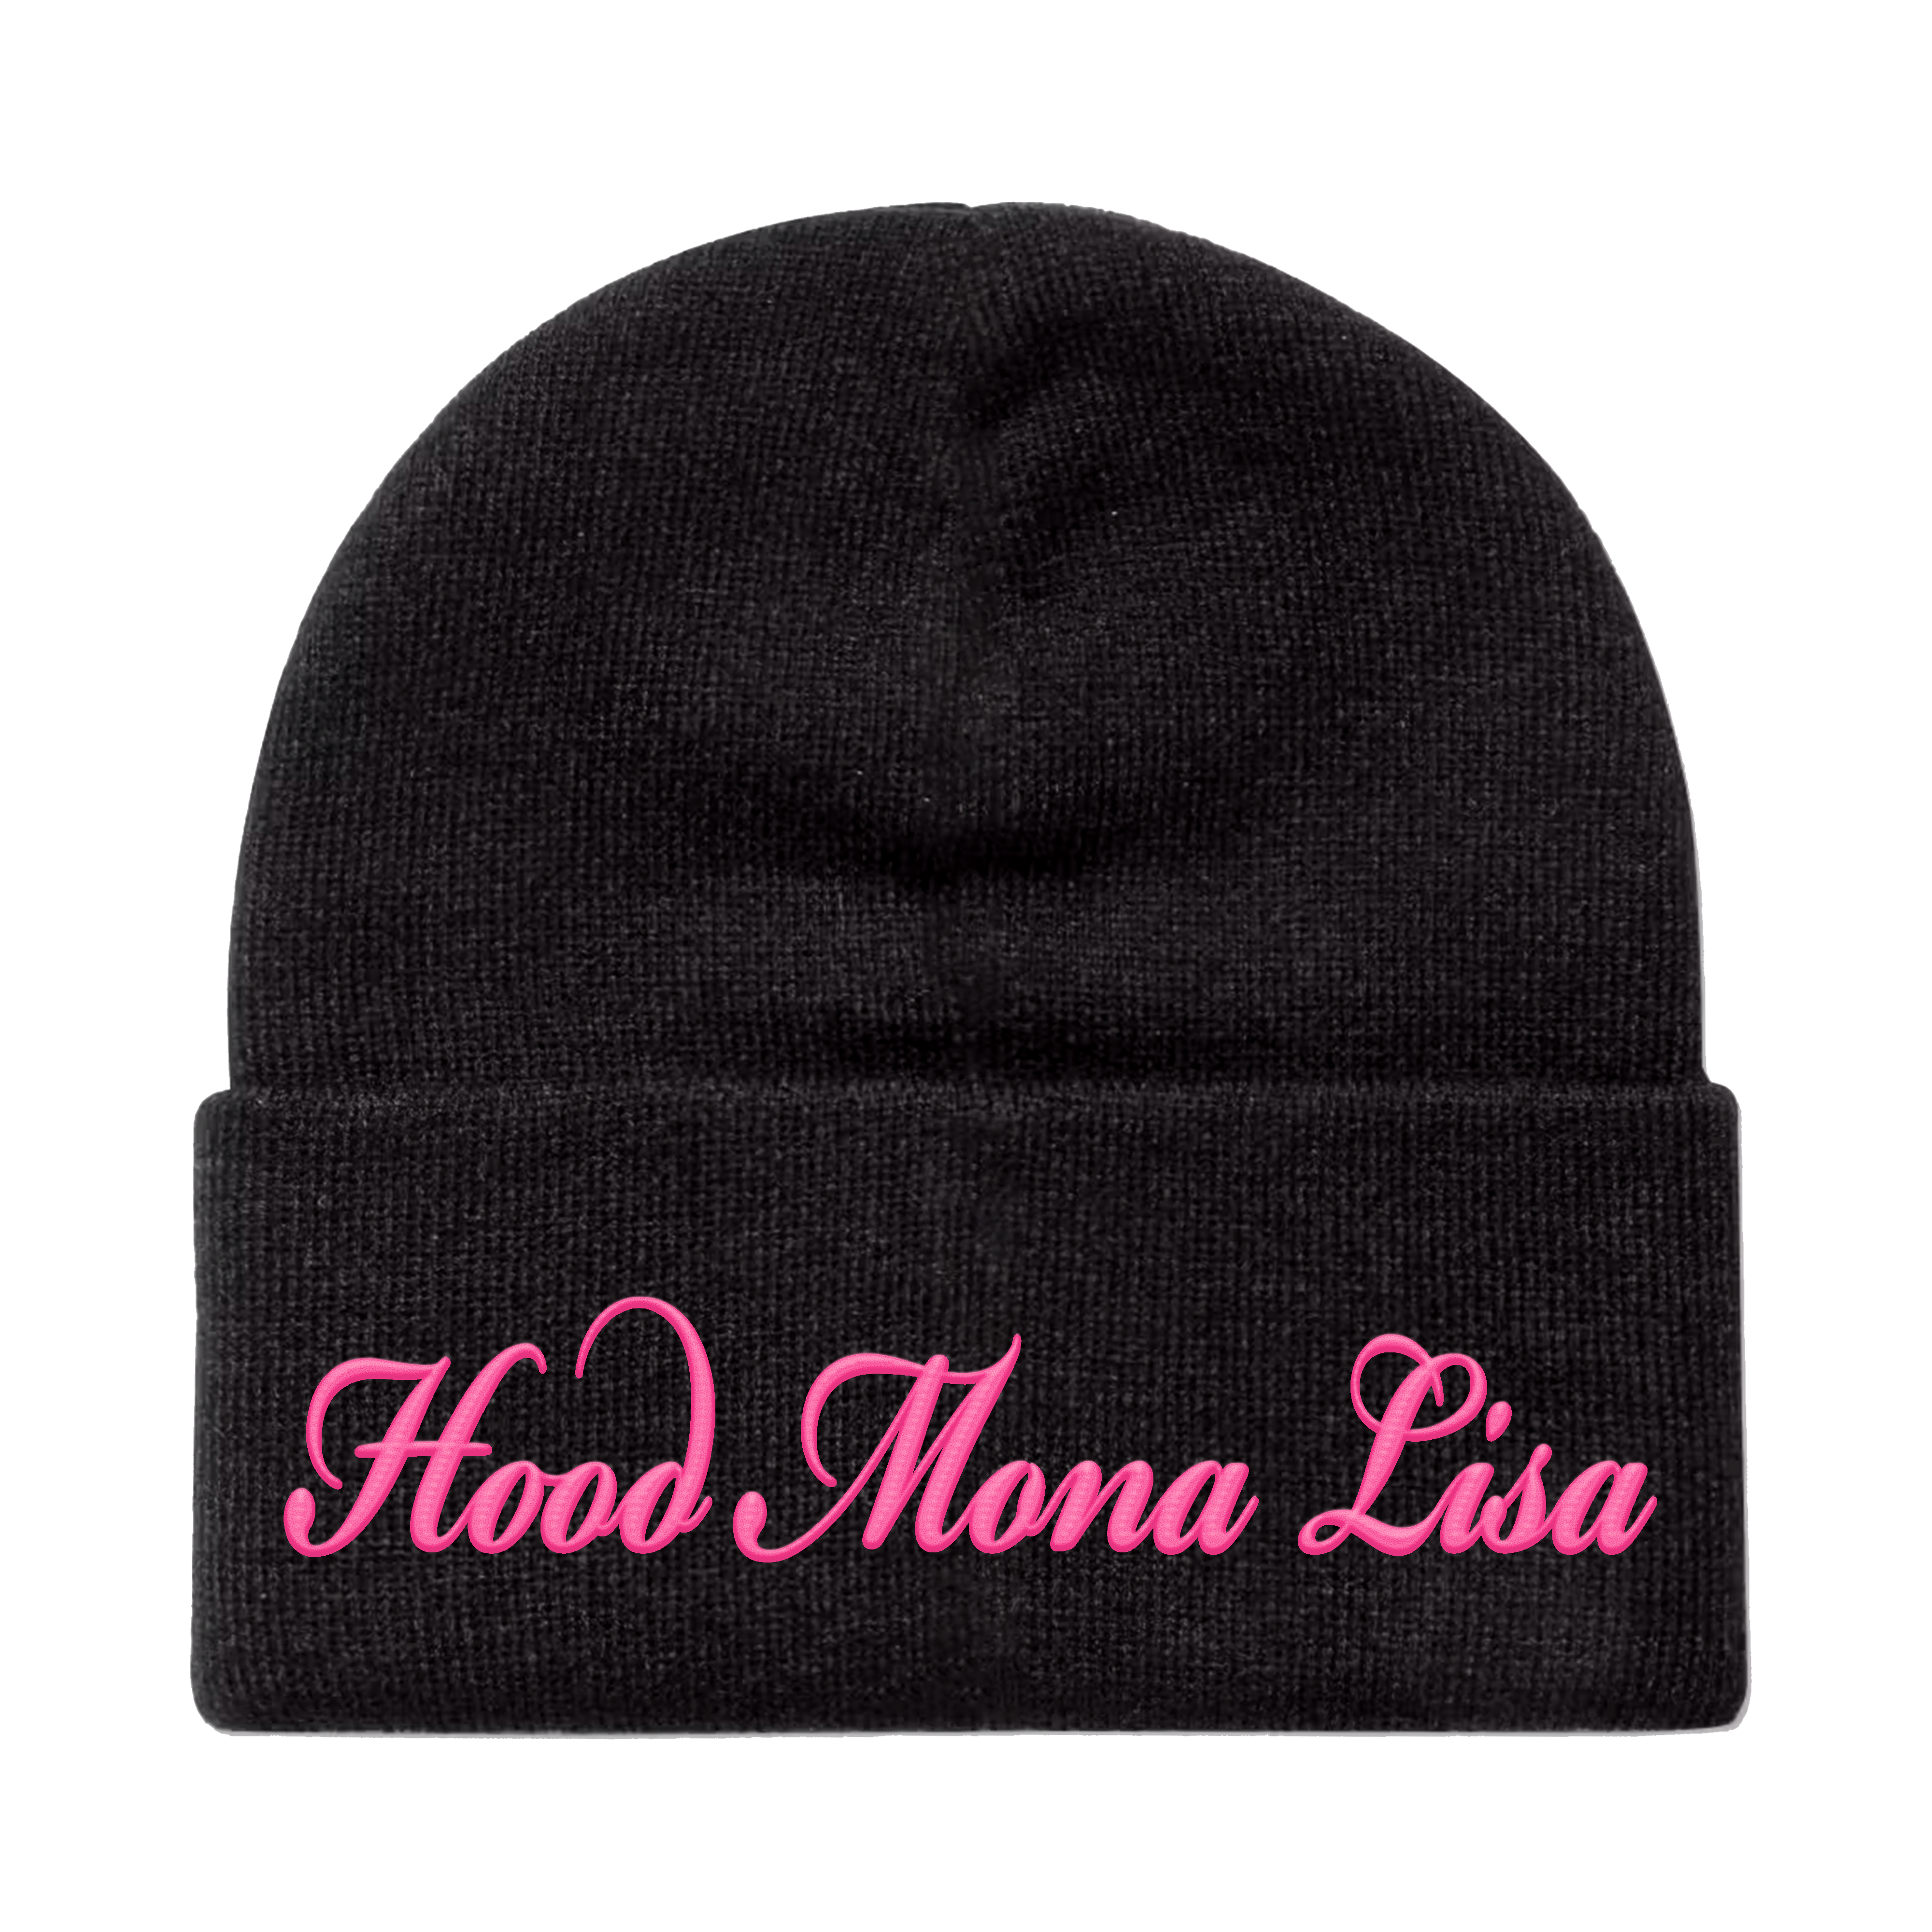 Hood Mona Lisa Beanie